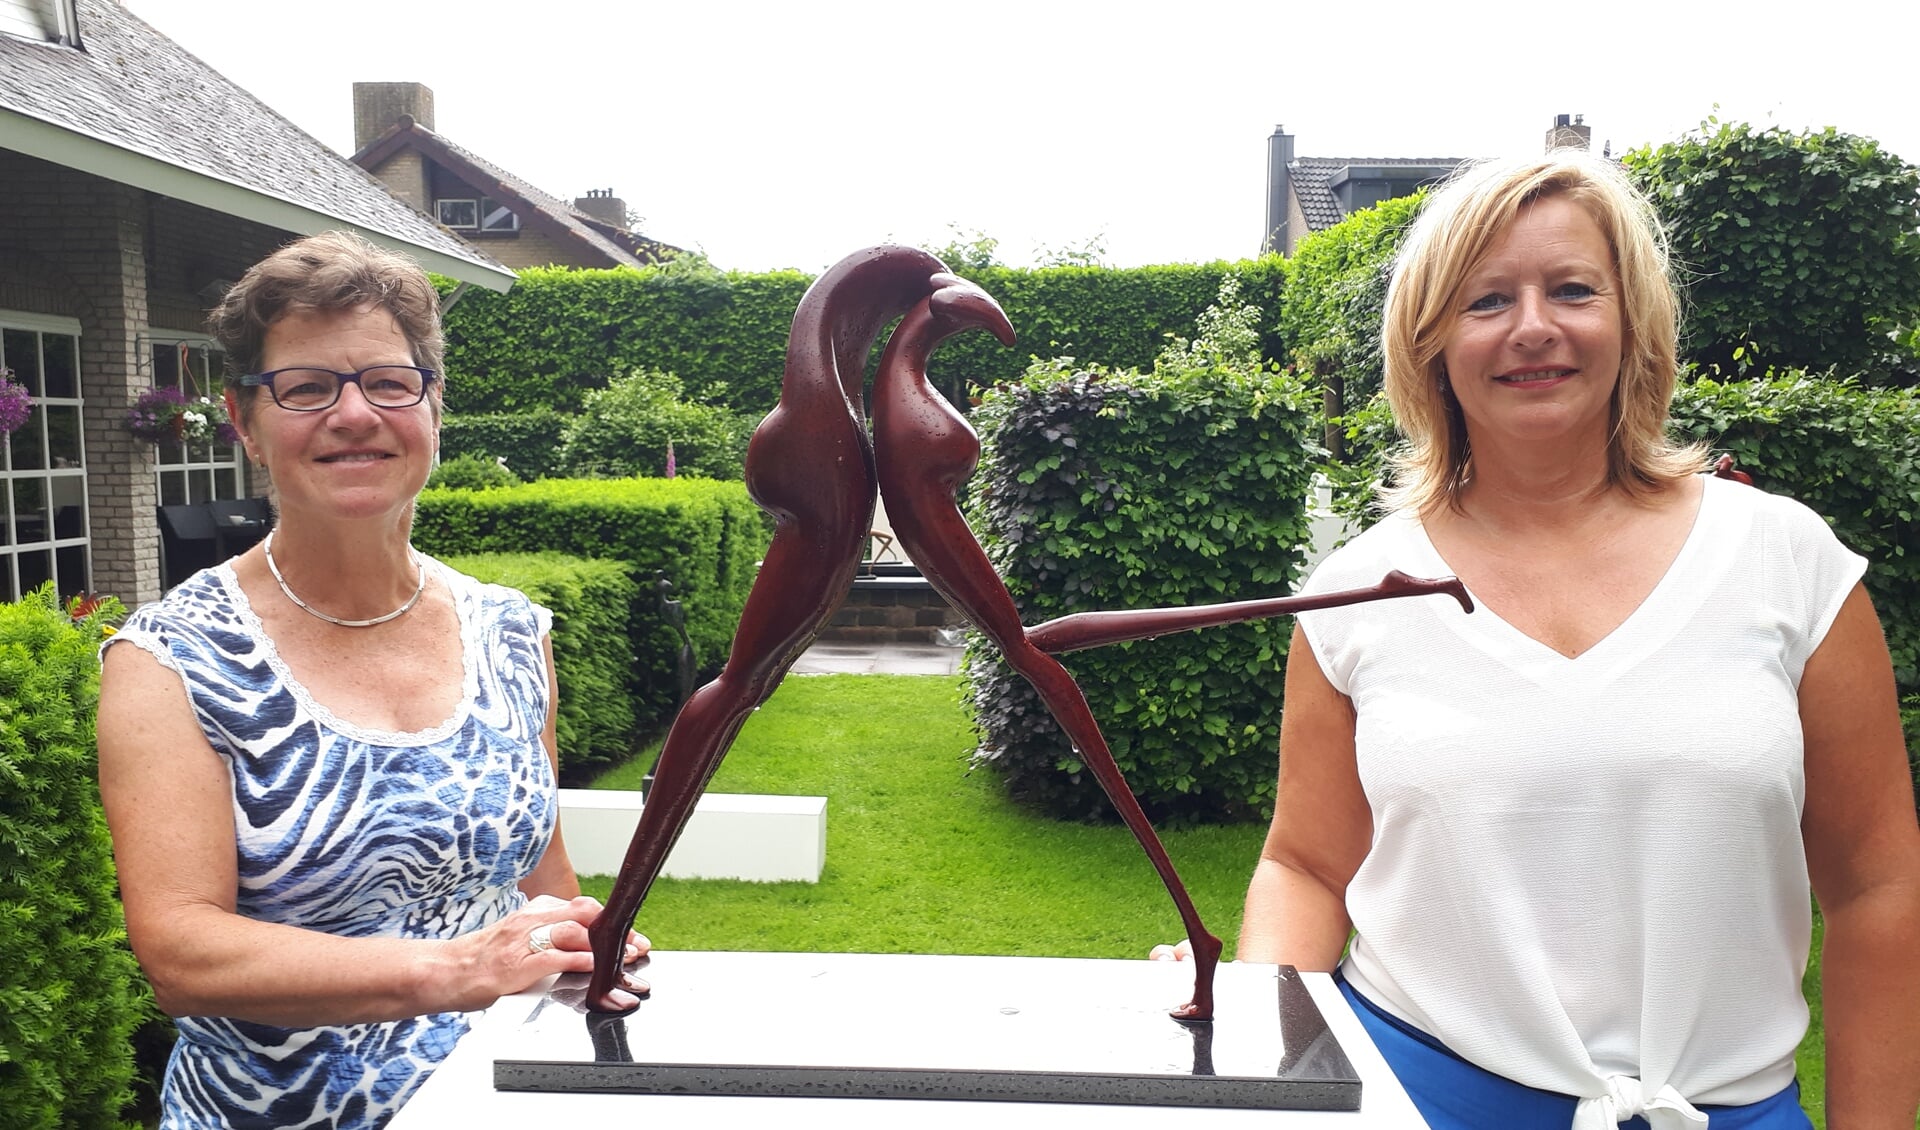 Gastvrouw Efrie van Moosdijk en kunstenares Yvonne Derijcke naast haar bronzen sculptuur ‘Passie’.